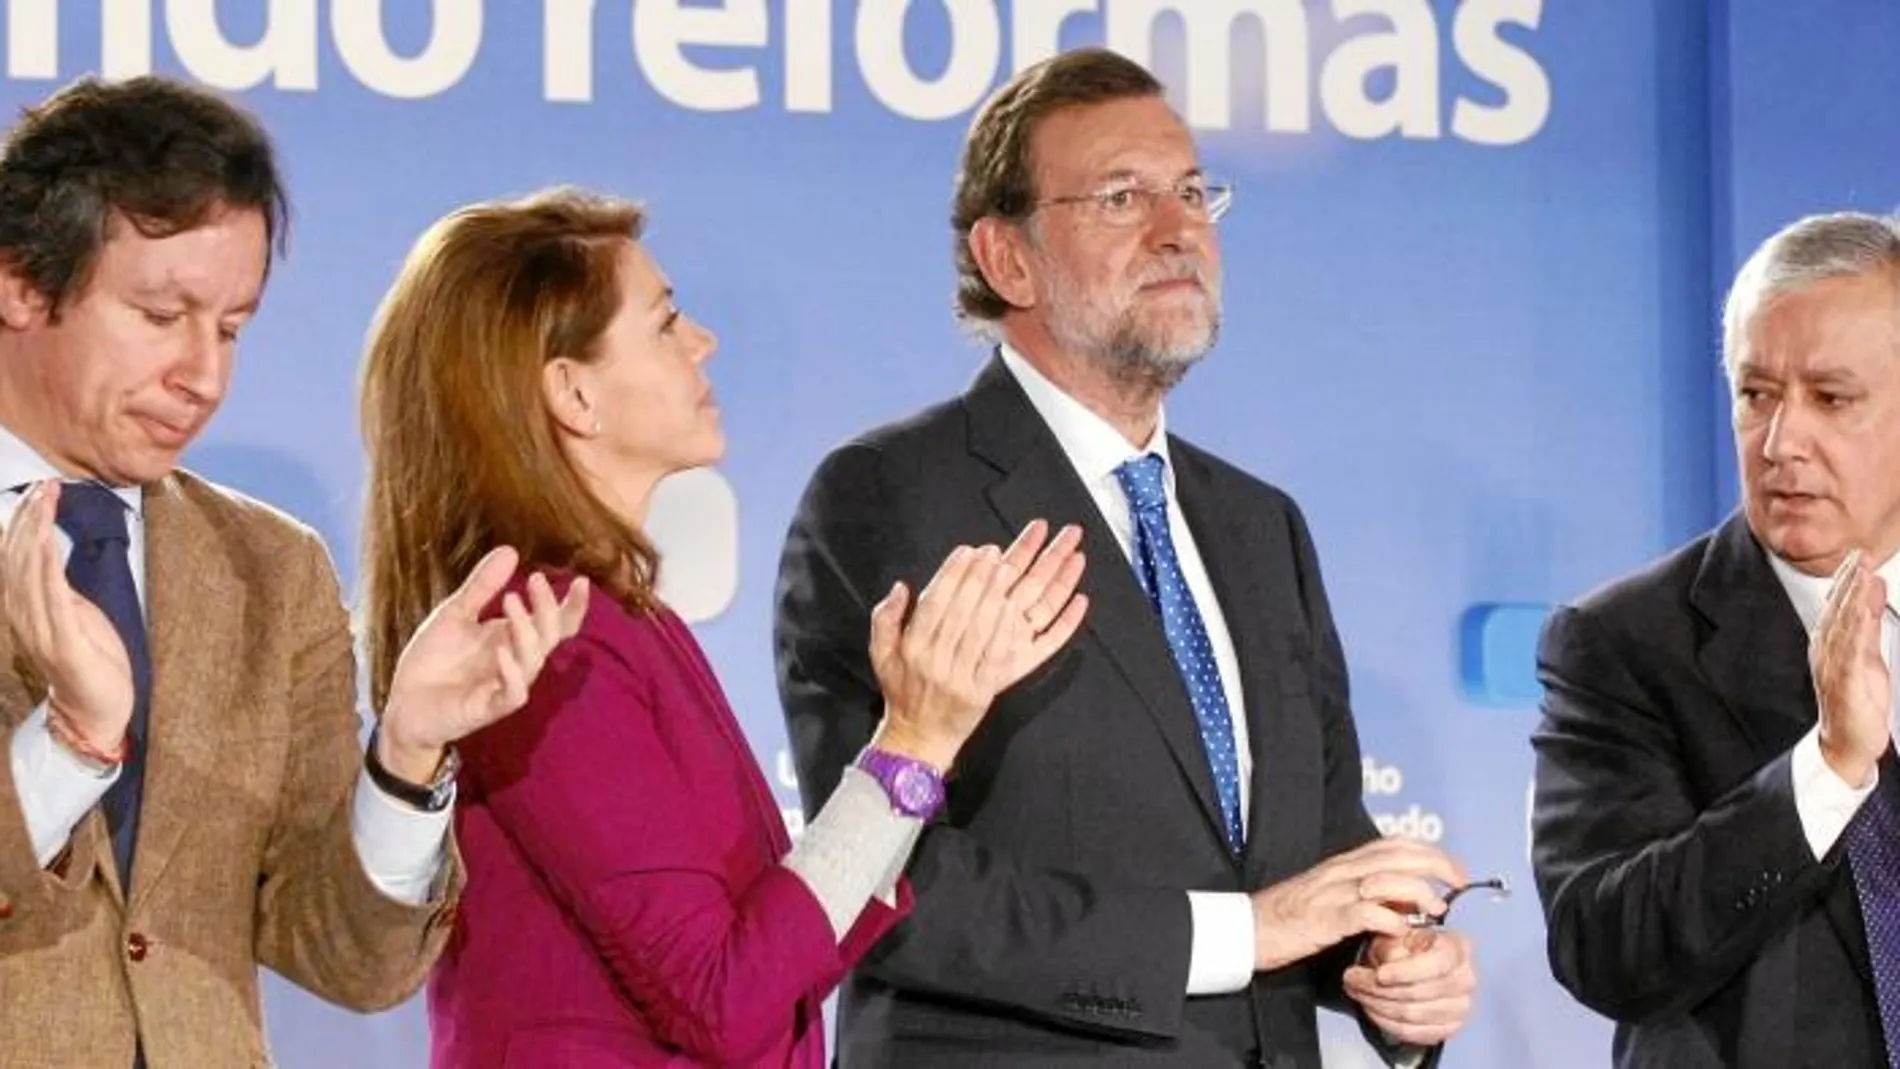 Rajoy presidió ayer la inauguración de la interparlamentaria del PP en Toledo. Con él, Carlos Floriano, María Dolores de Cospedal y Javier Arenas